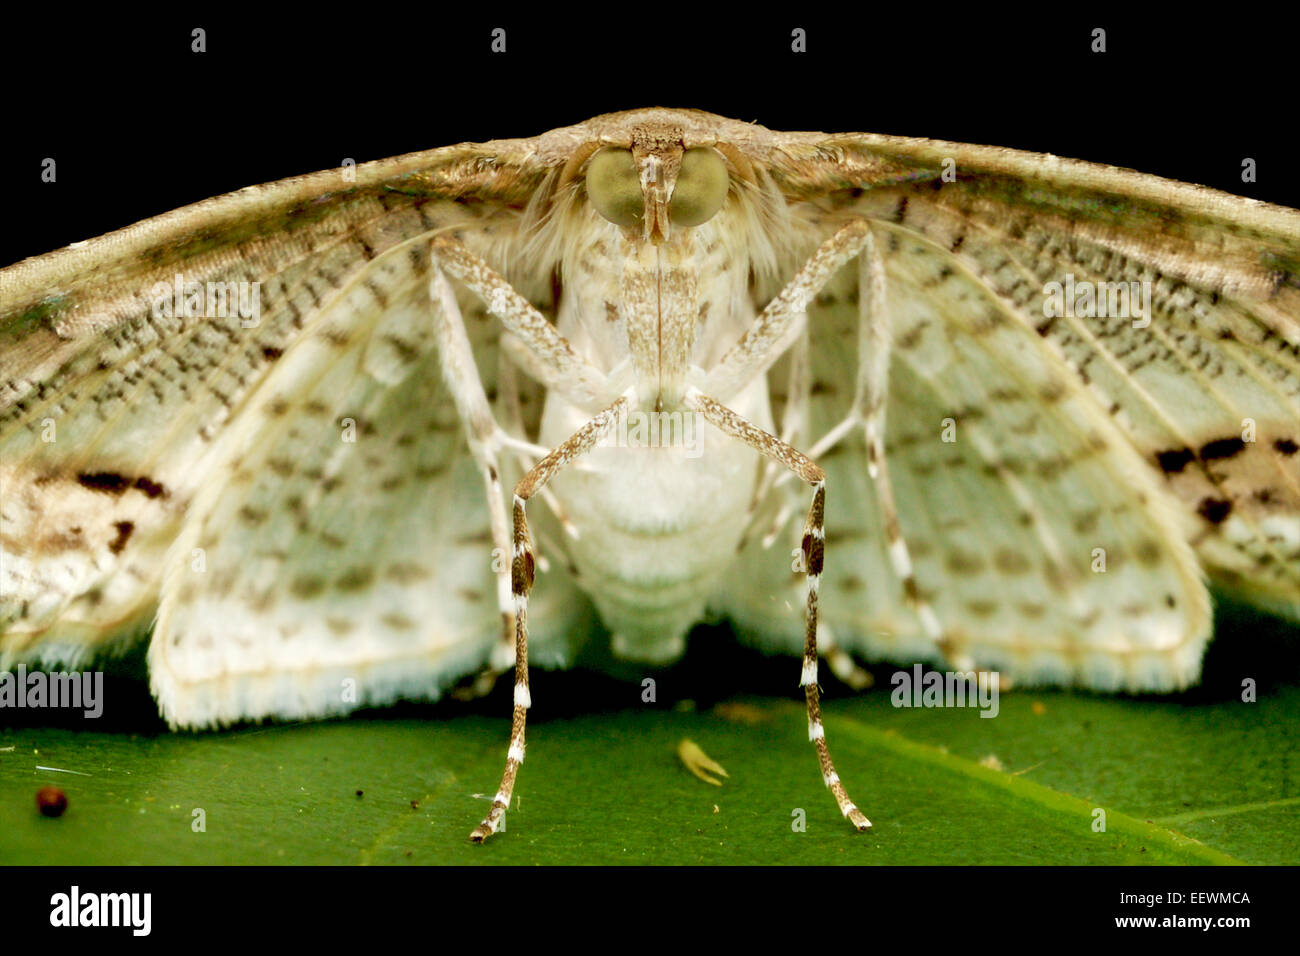 La polilla de la hierba son Crambidae familia de lepidópteros (mariposas y polillas). Foto de stock